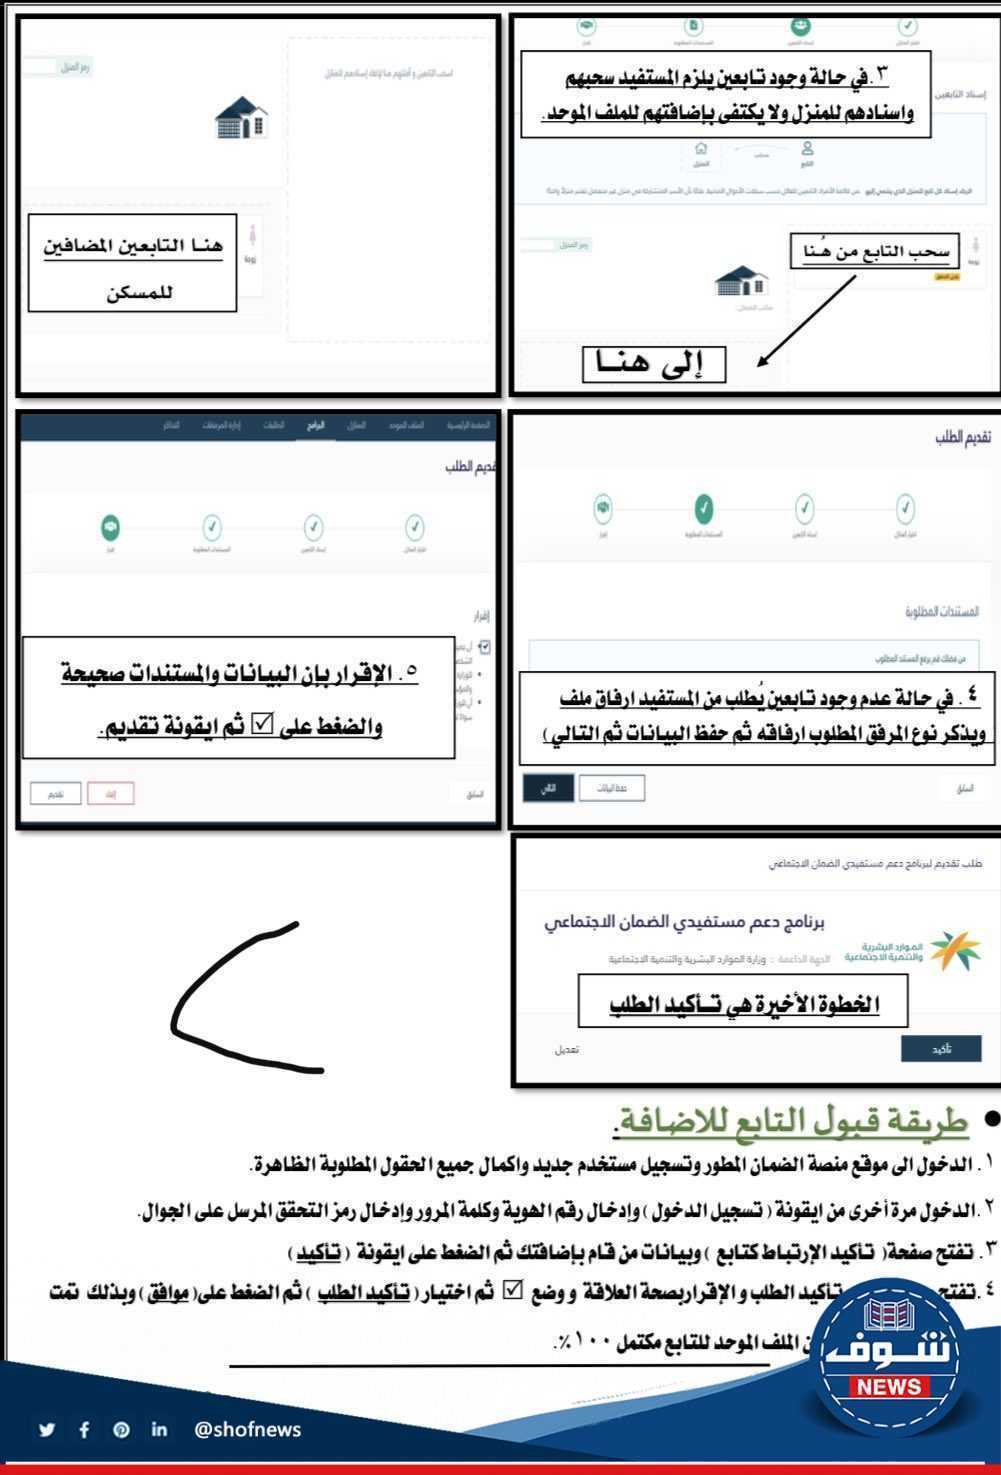 [بالصور] شرح طريقة التسجيل في النظام المطور 1444 الضمان الاجتماعي السعودية